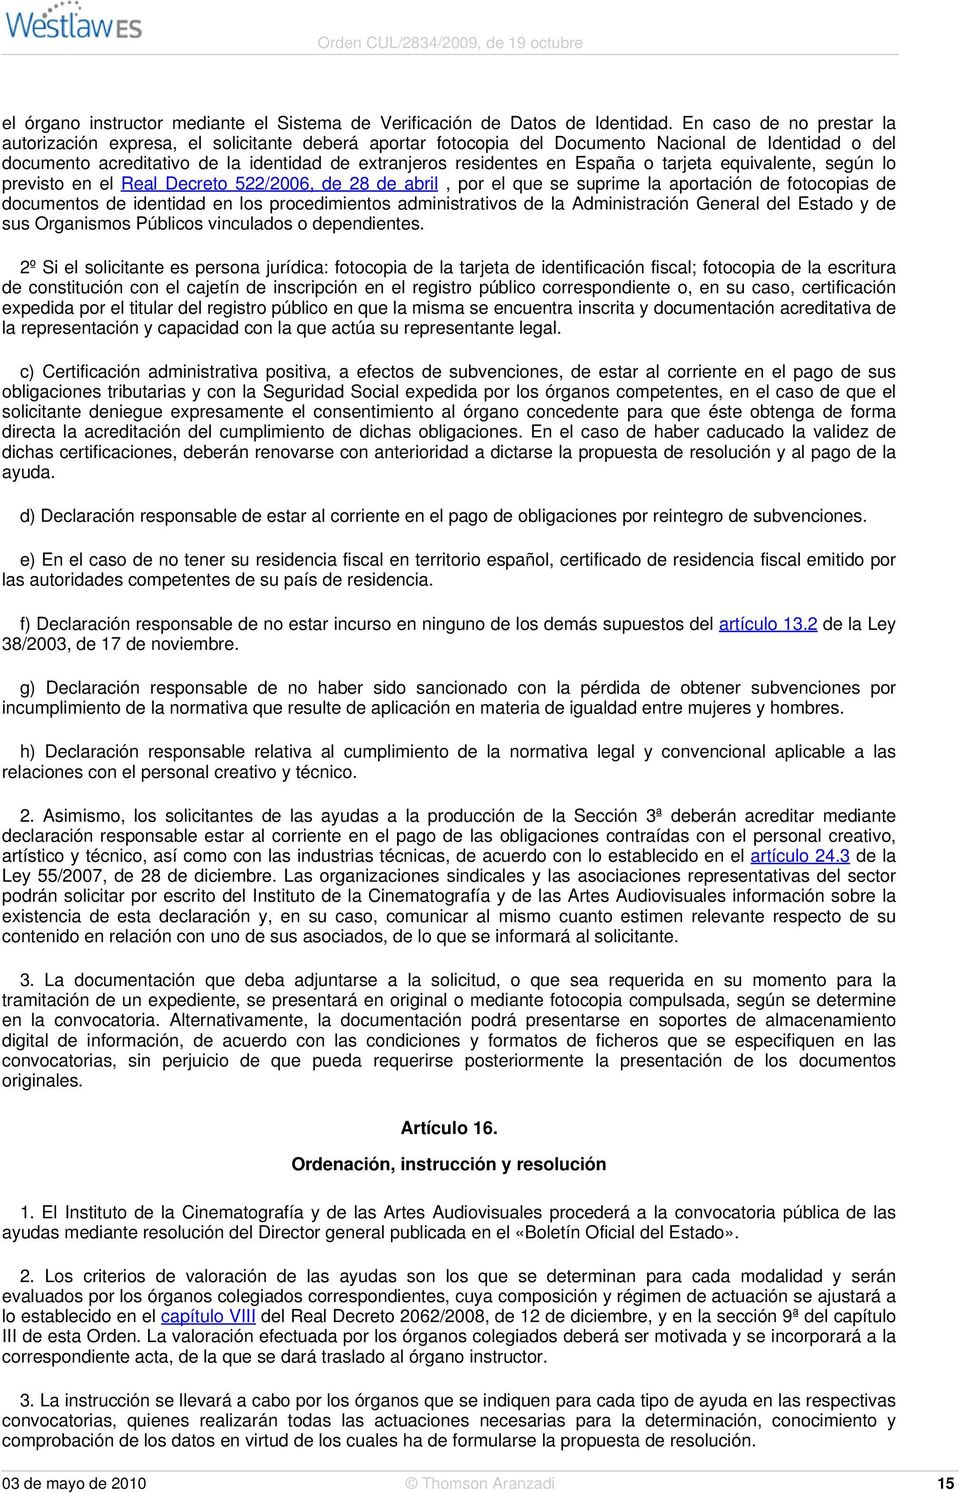 España o tarjeta equivalente, según lo previsto en el Real Decreto 522/2006, de 28 de abril, por el que se suprime la aportación de fotocopias de documentos de identidad en los procedimientos